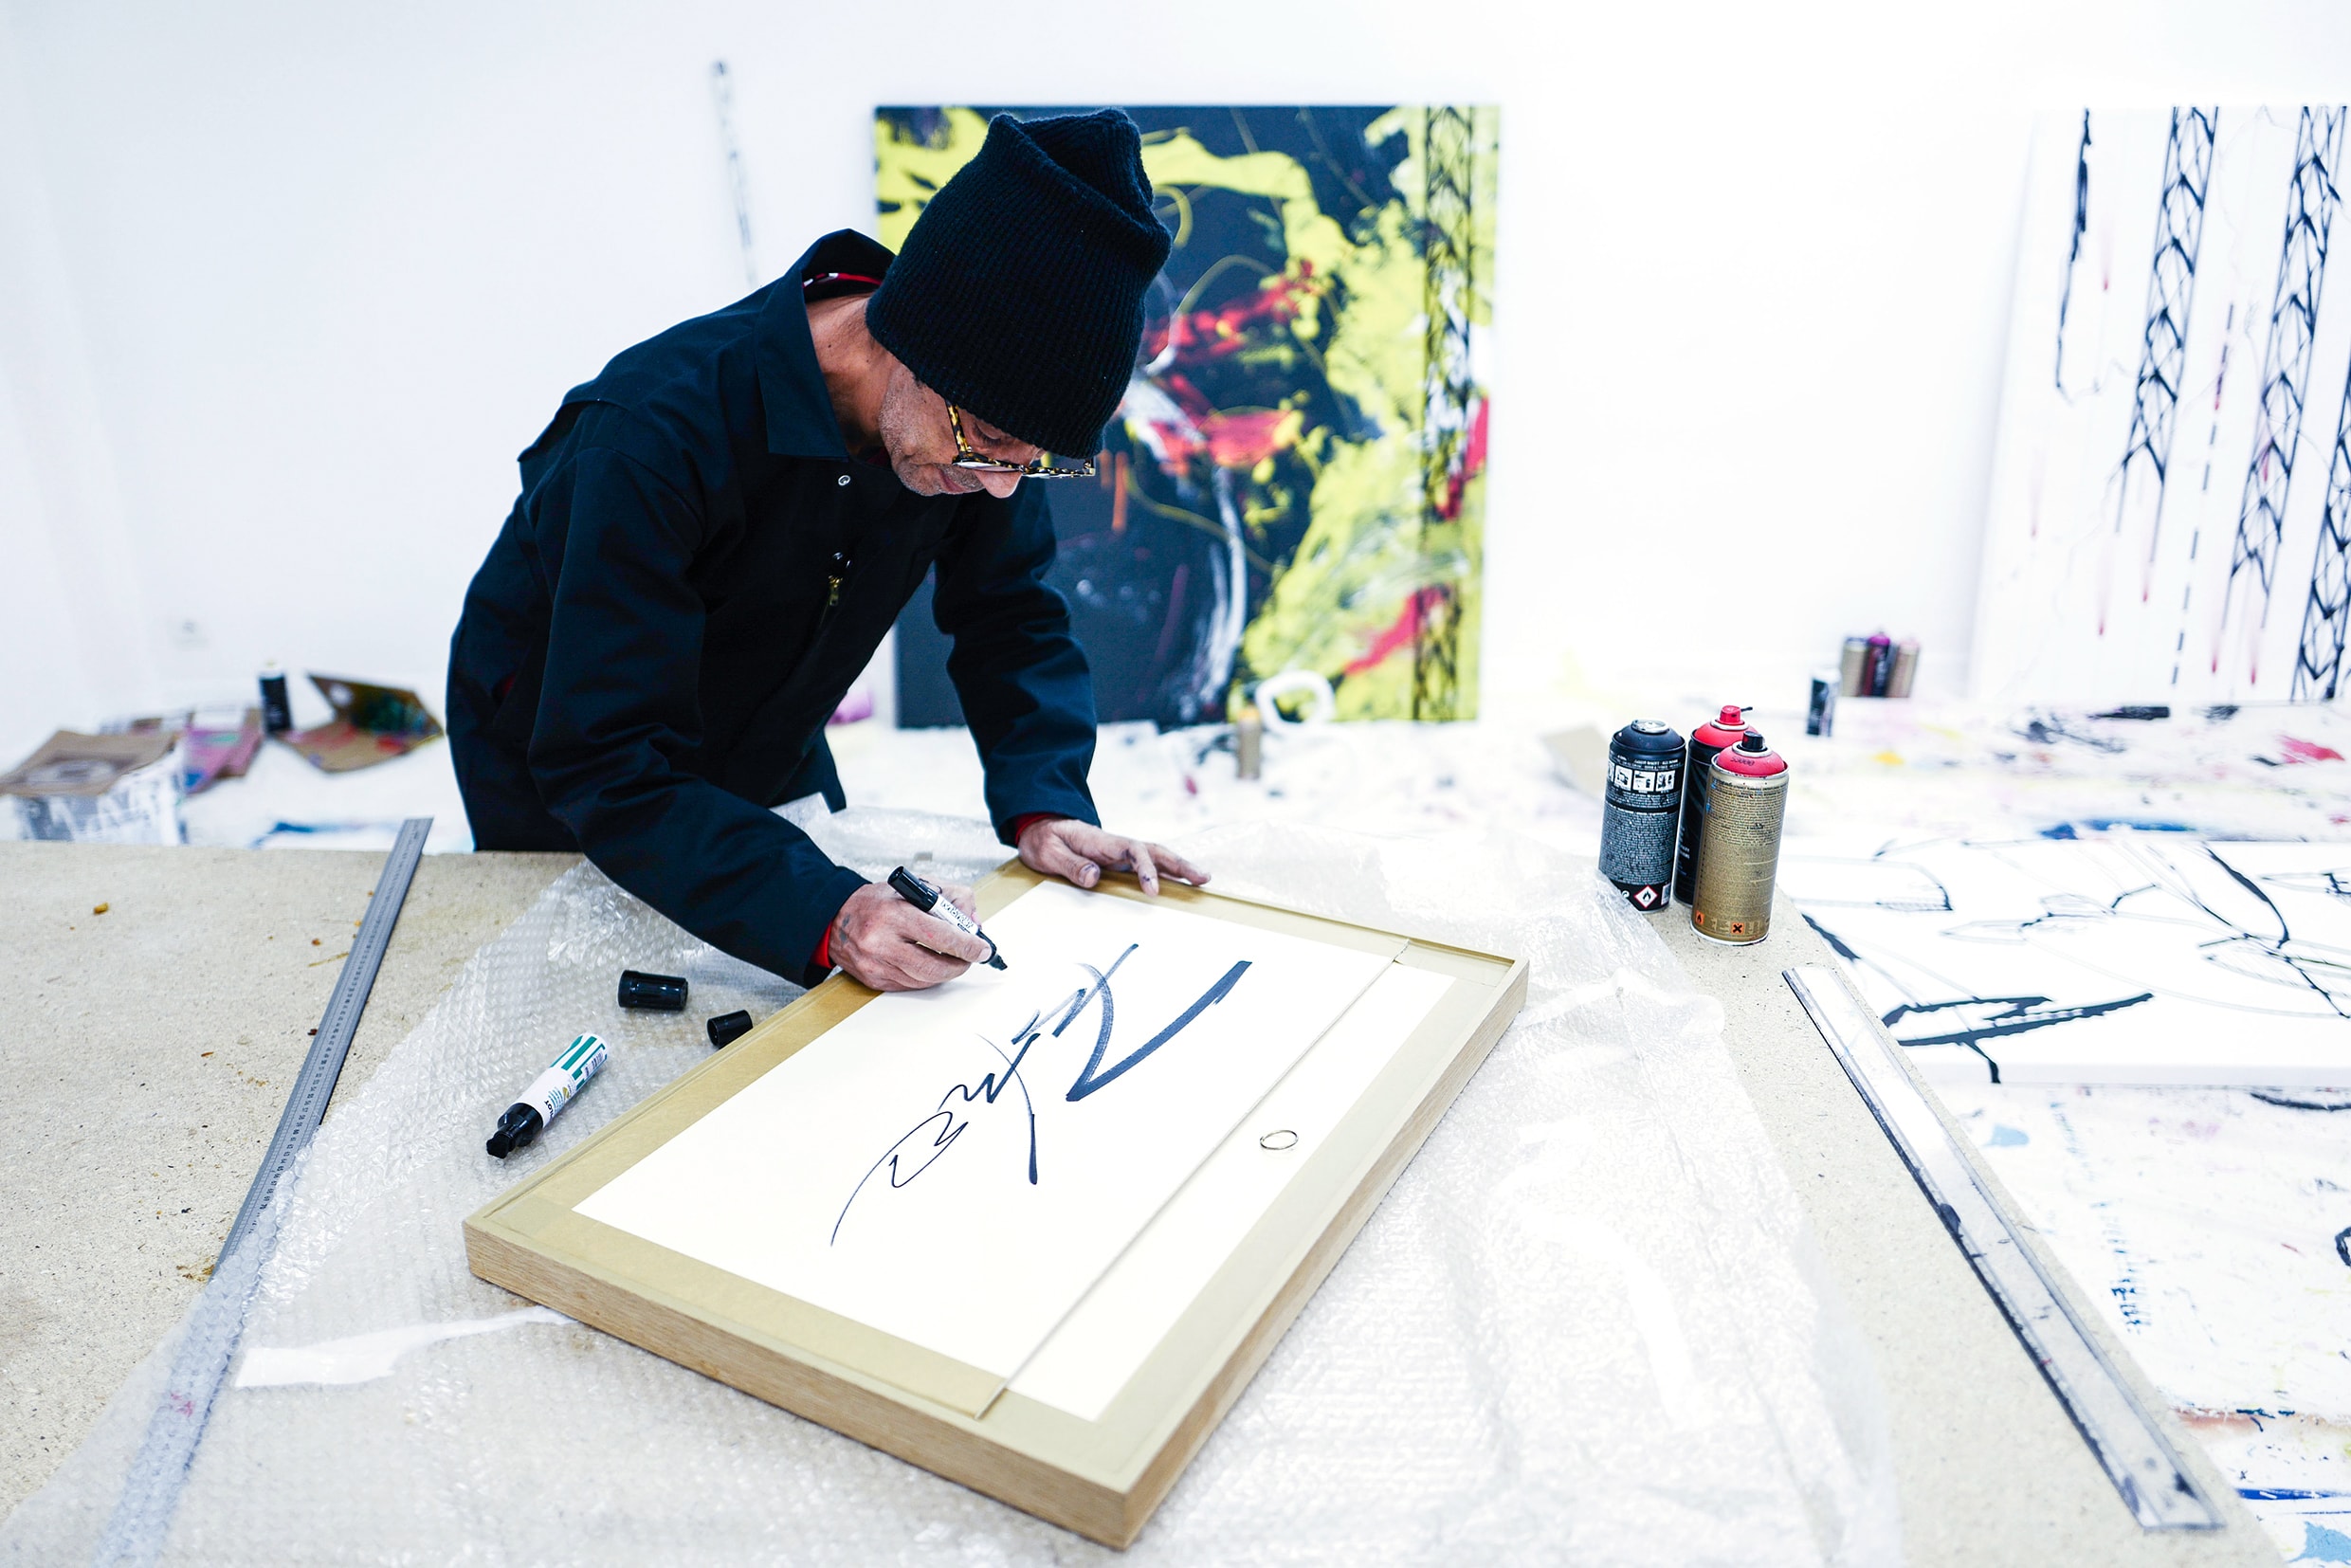 藝術三月－傳奇塗鴉藝術家 Futura 將來港開設《Abstract Compass》展覽